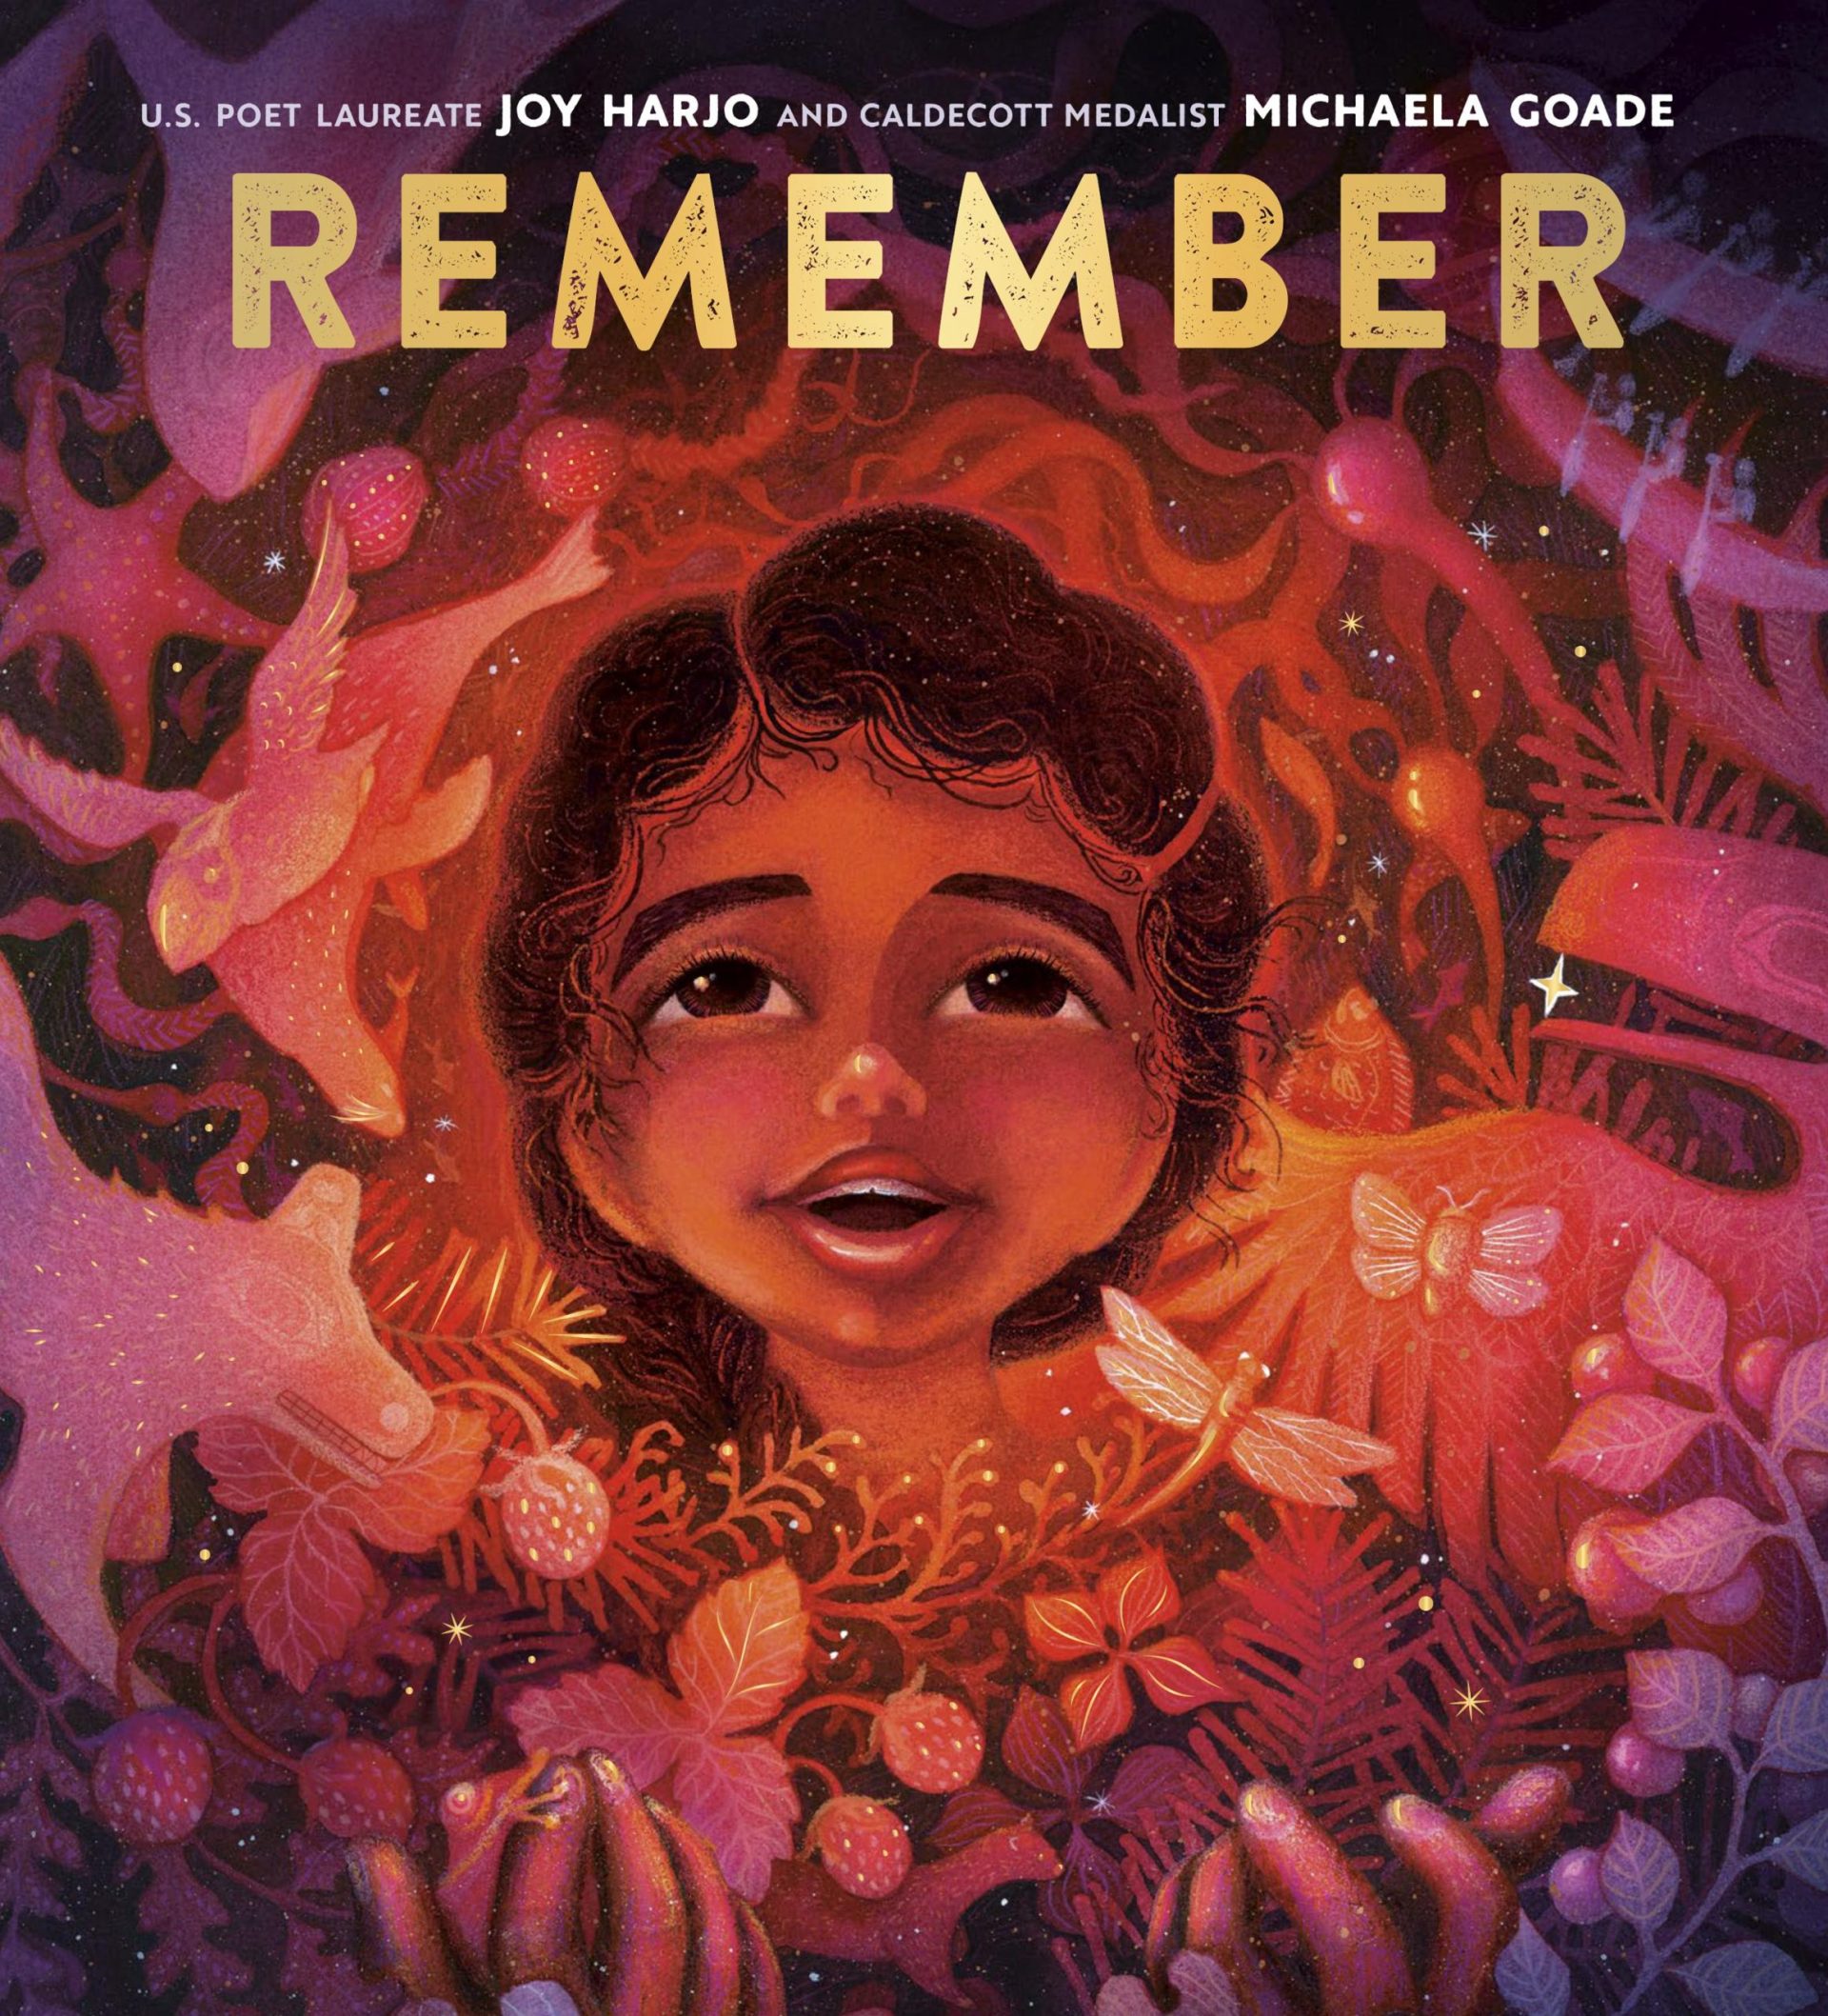 El libro ilustrado “Remember” de Joy Harjo saldrá a la venta el próximo año